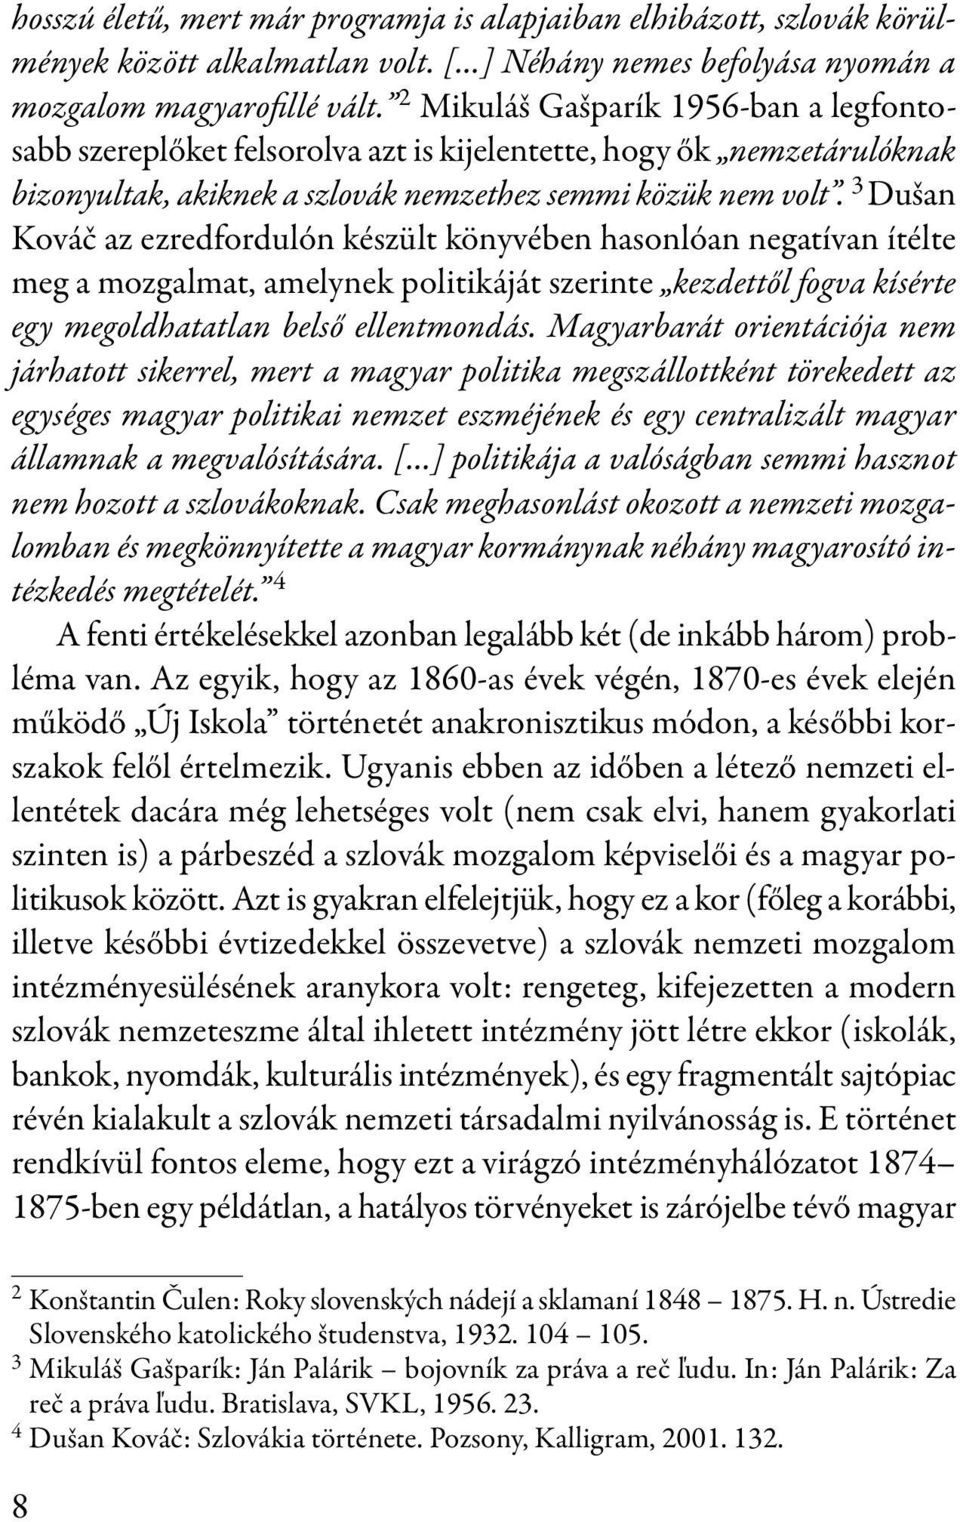 3 Dušan Kováč az ezredfordulón készült könyvében hasonlóan negatívan ítélte meg a mozgalmat, amelynek politikáját szerinte kezdettől fogva kísérte egy megoldhatatlan belső ellentmondás.